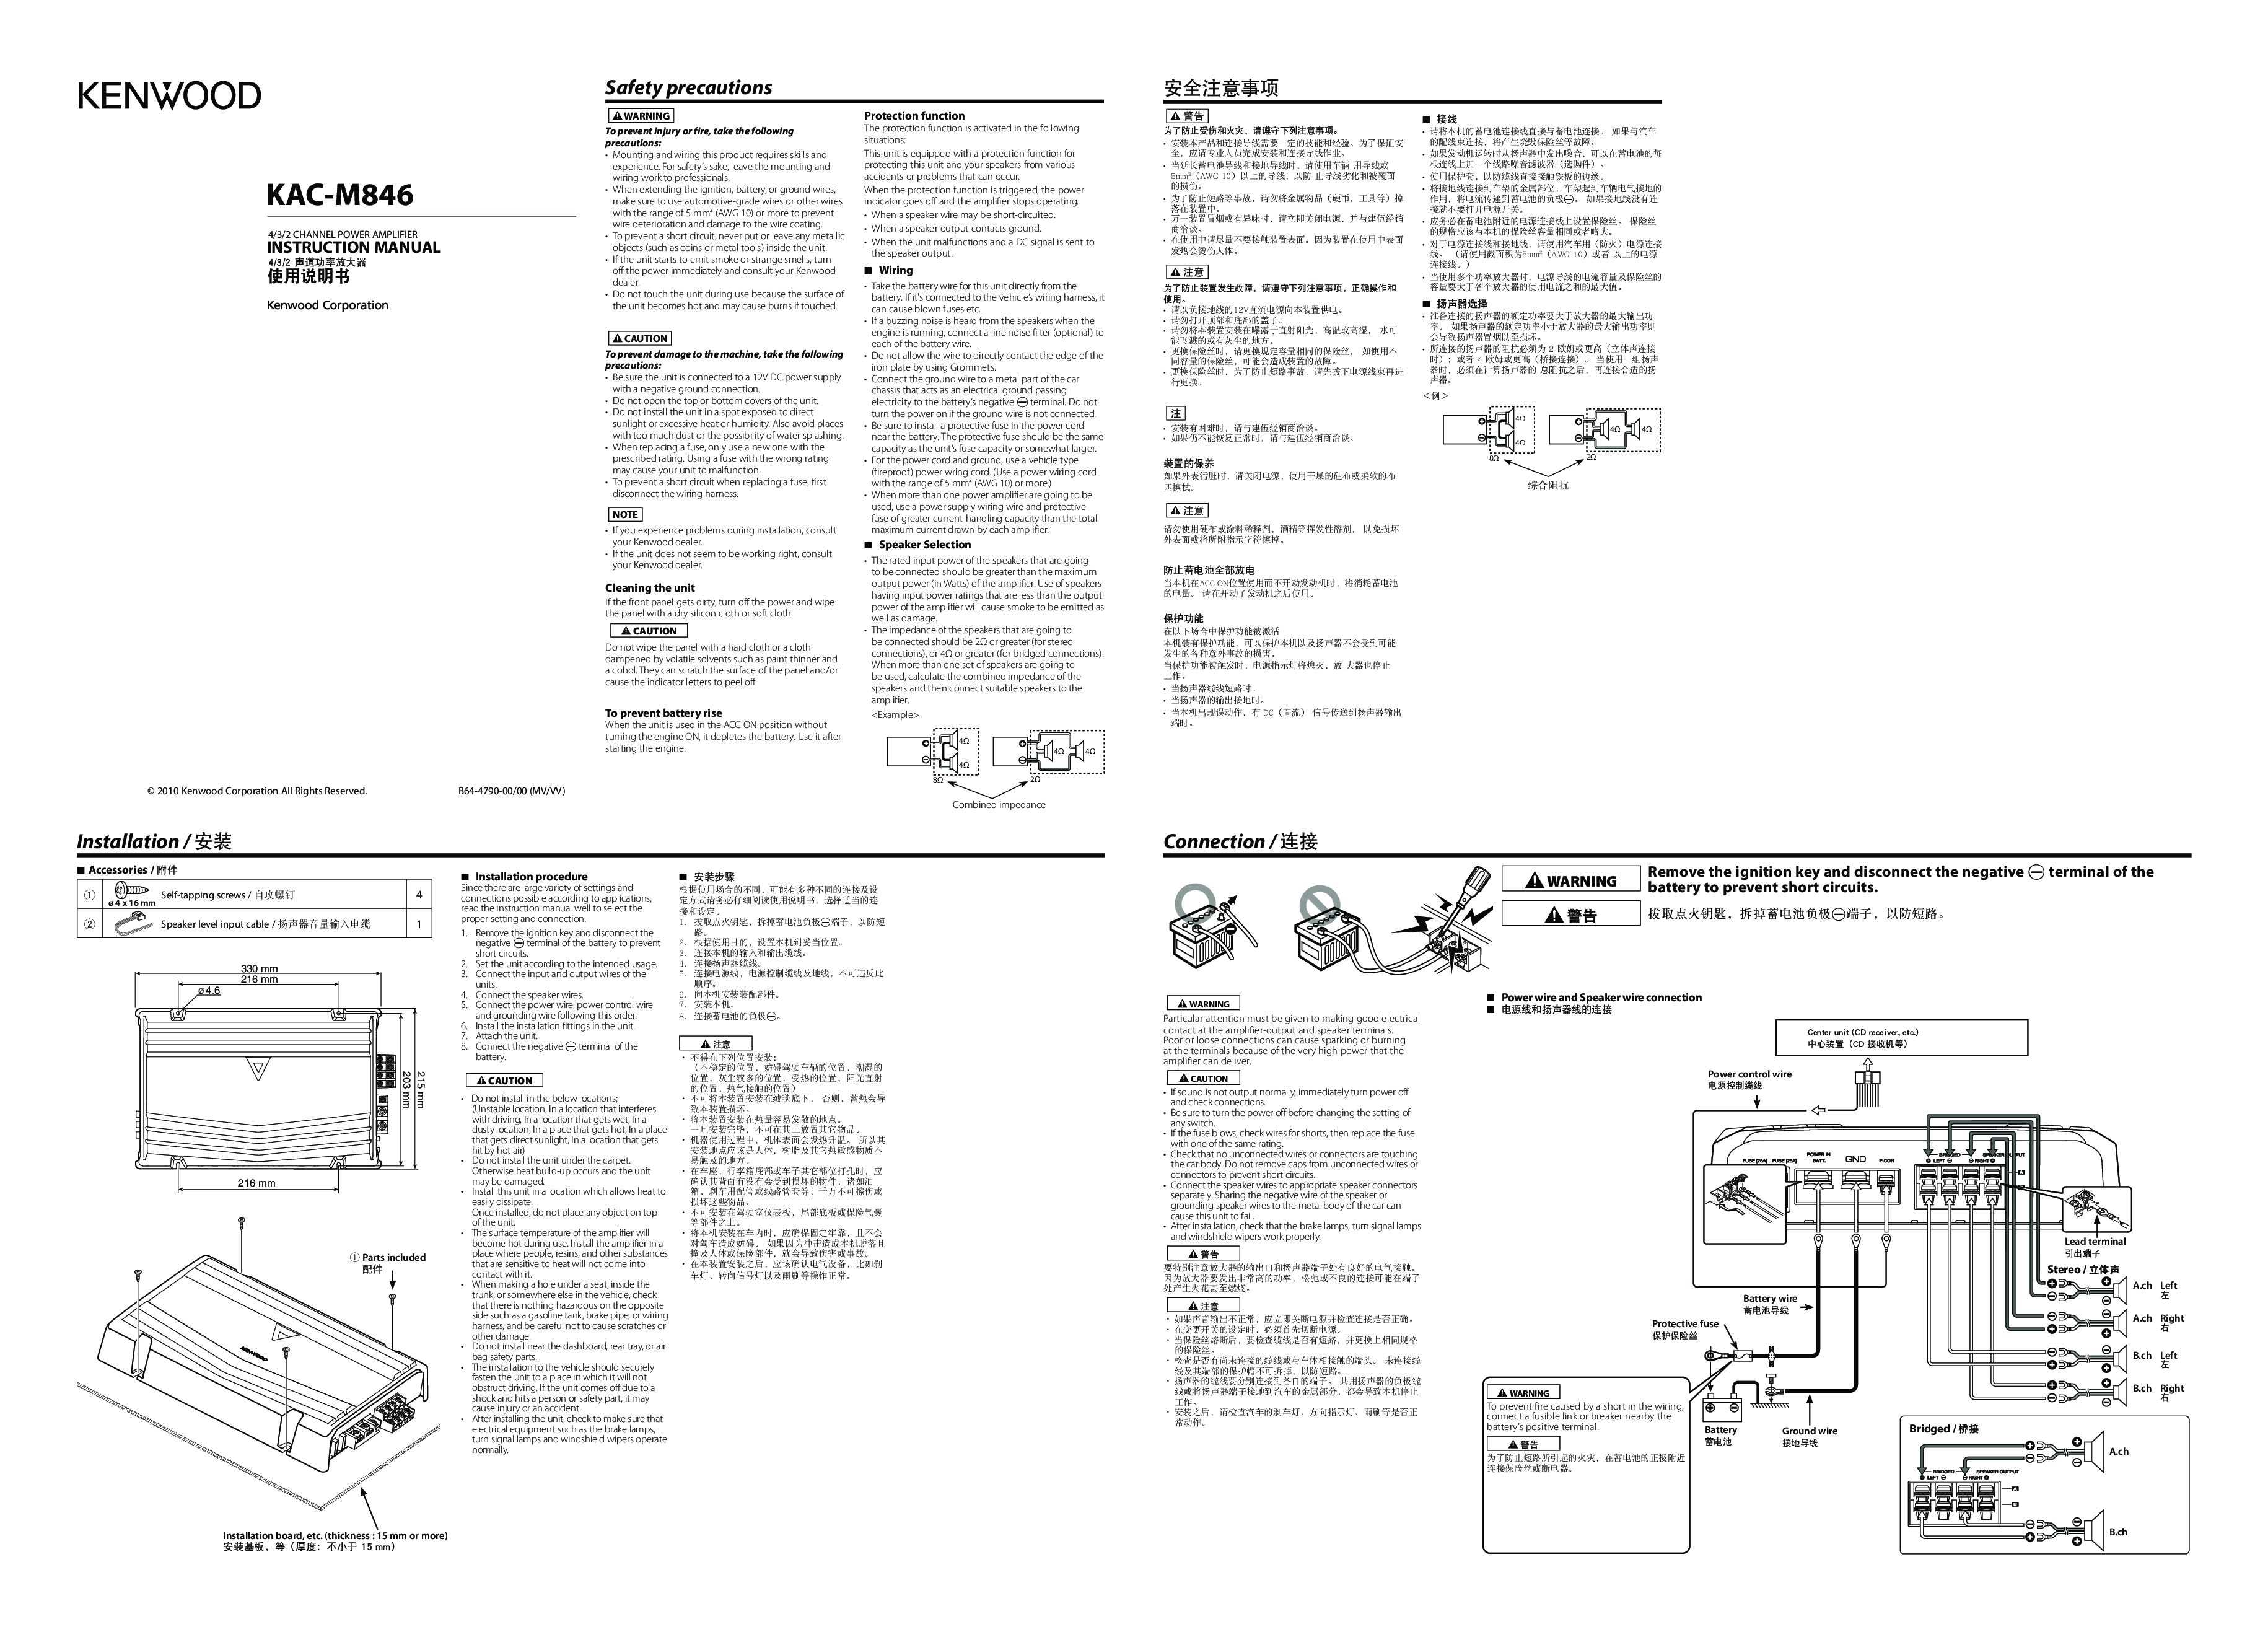 Kenwood KAC-M846 User Manual